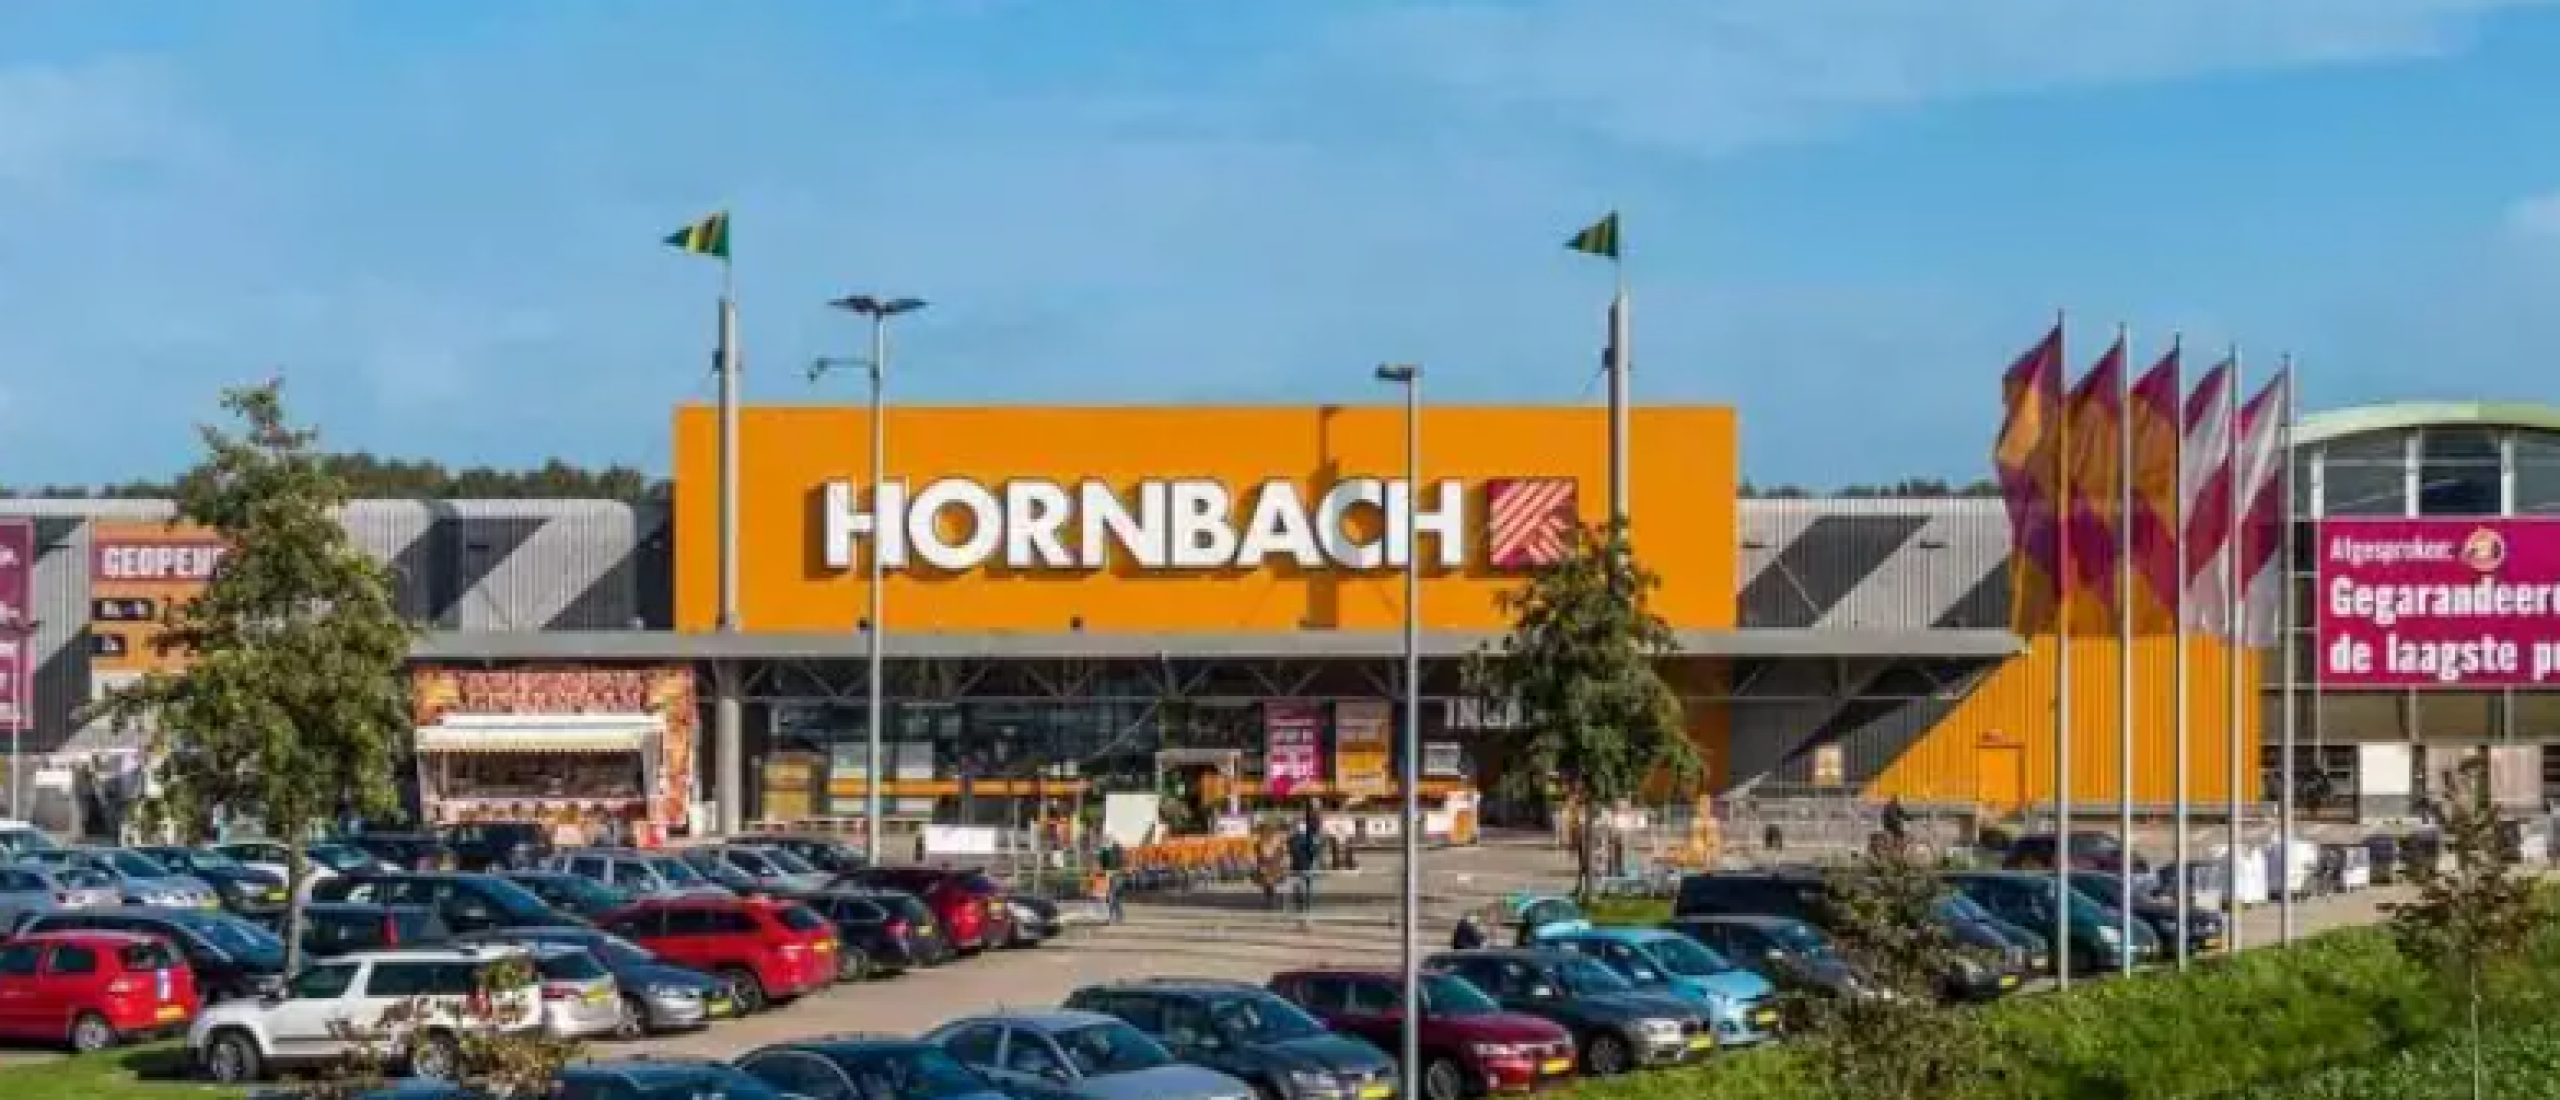 Budgettip: claim geld terug met Hornbach’s laagsteprijsgarantie